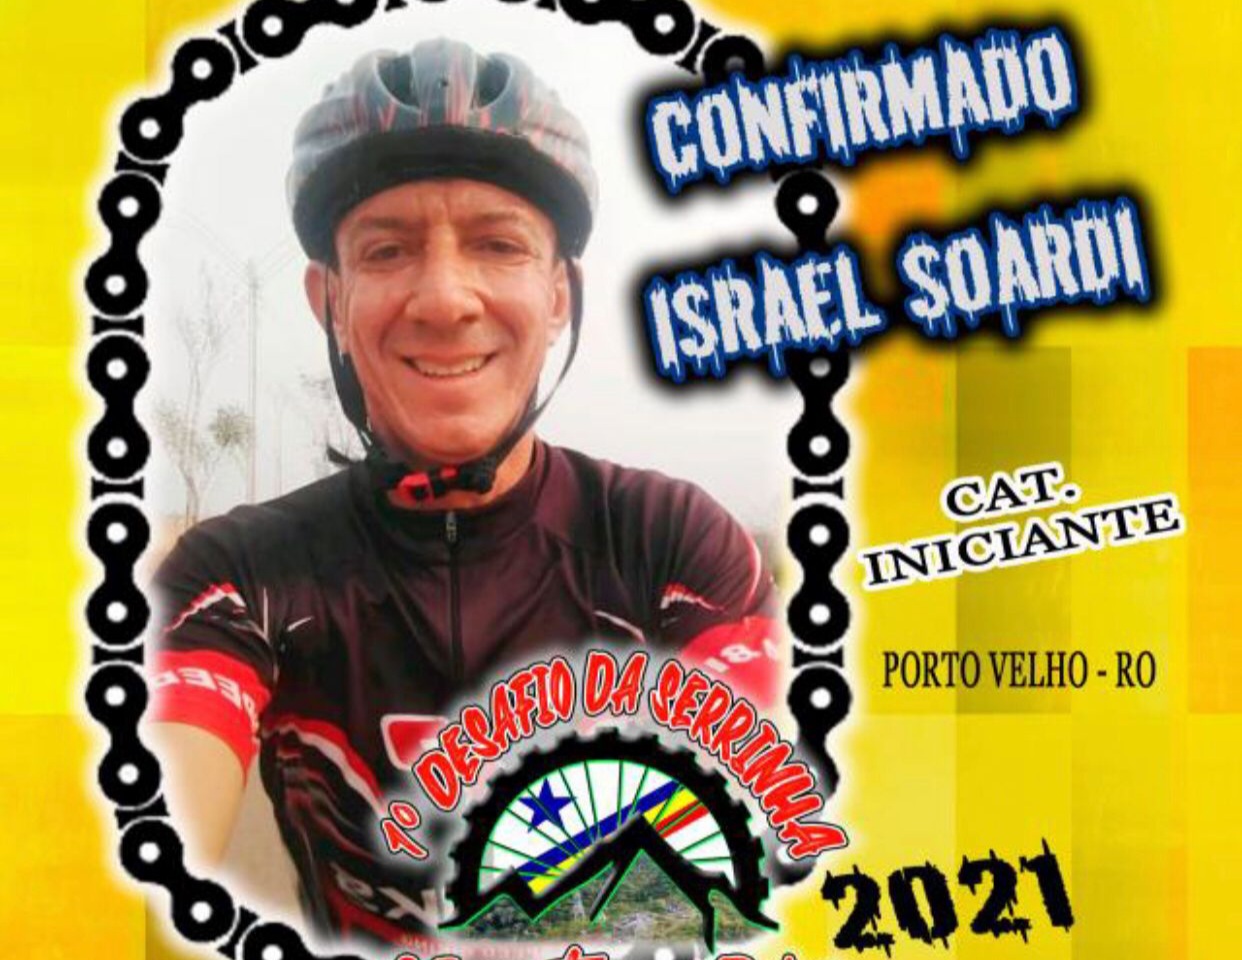 MOTORISTA FUGIU: Federação de Ciclismo lamenta morte de Israel Soardi na BR-364